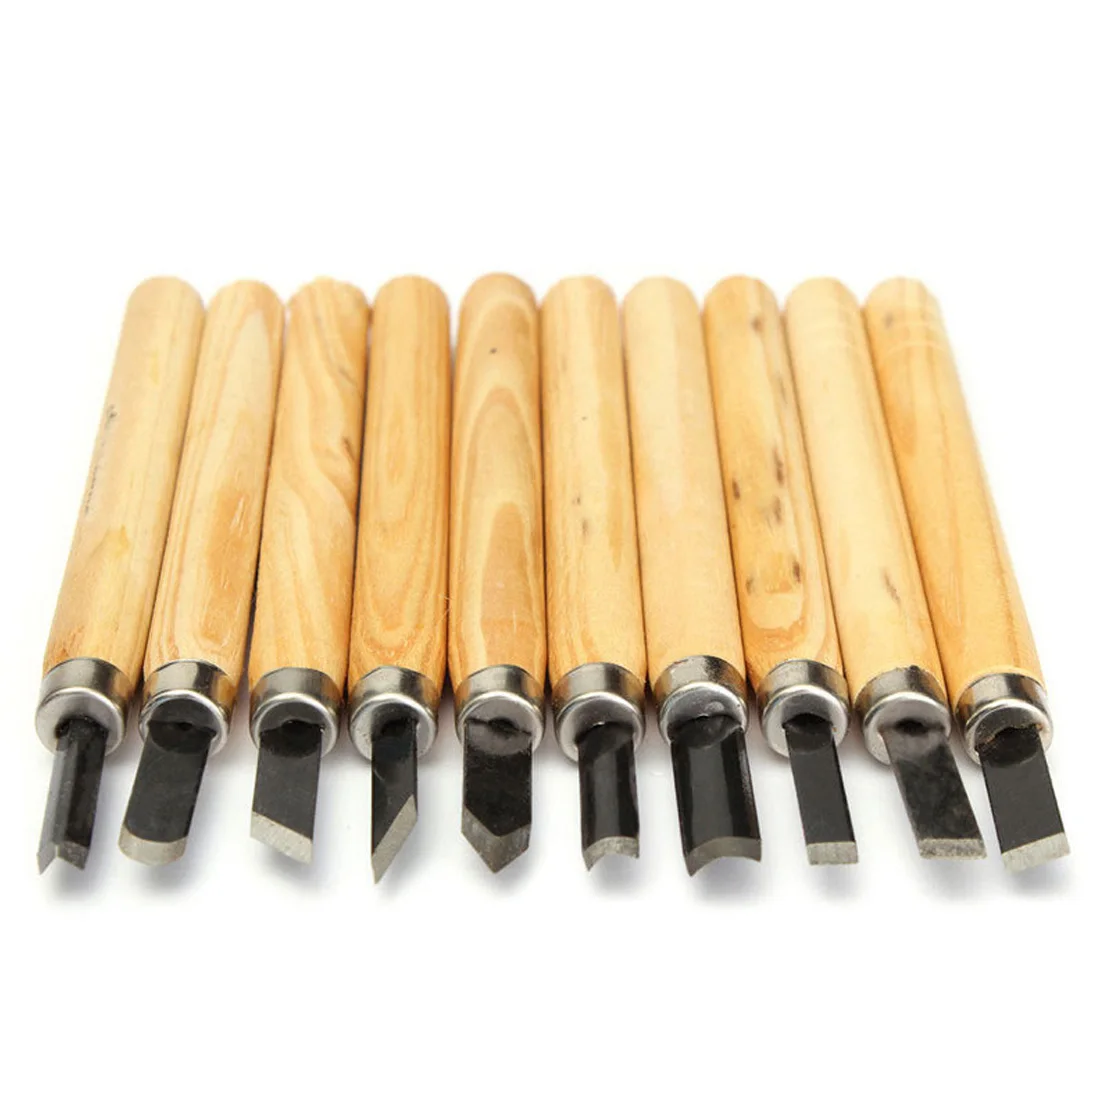 Ручка для дизайна ногтей в домашних условиях нож с резьбой по дереву Scarper резьба по дереву Инструменты 10 шт./12 шт увлечение деревообработкой